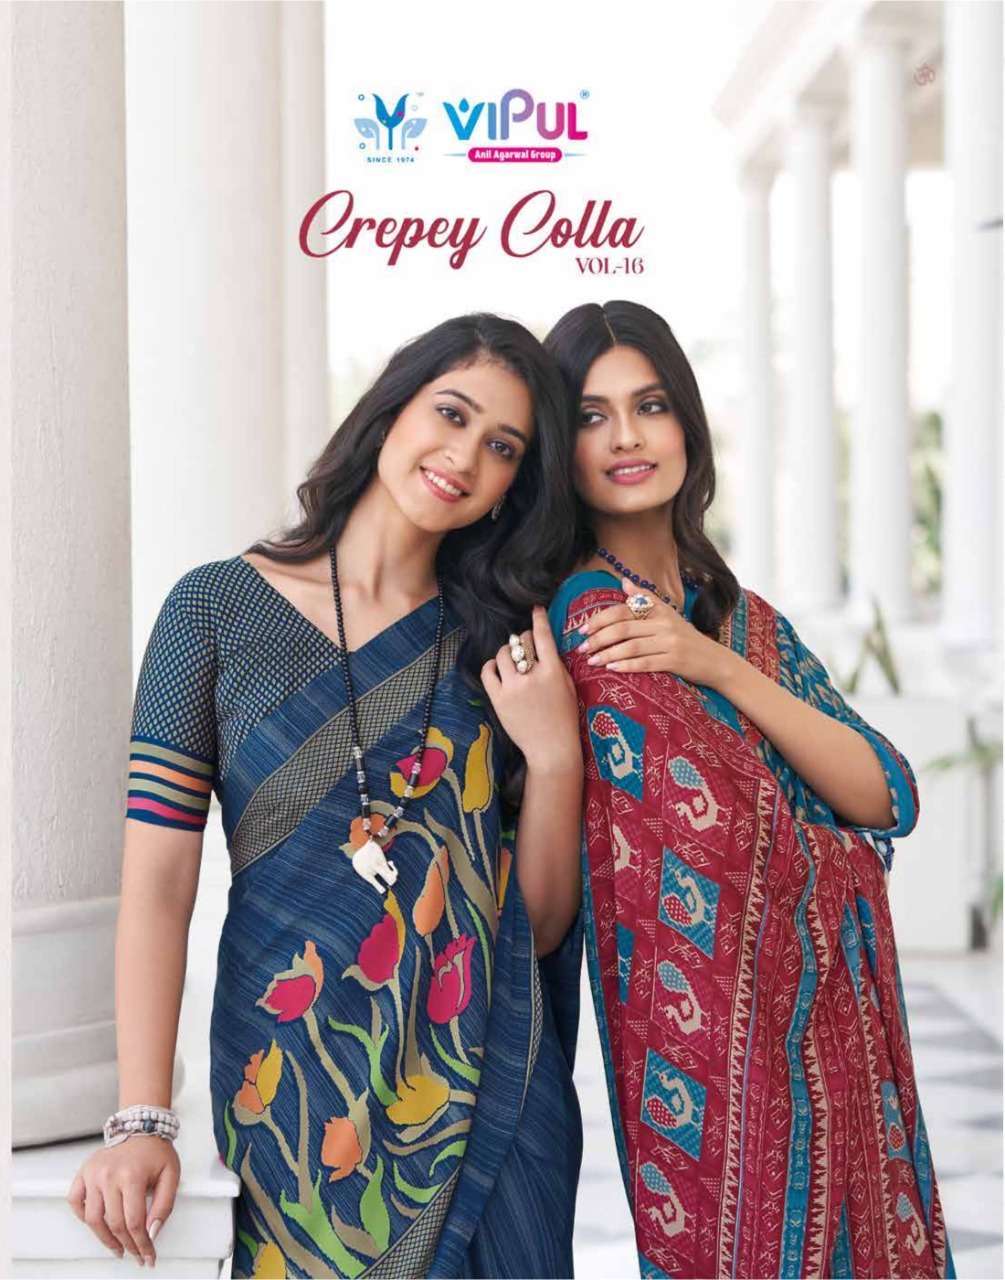 Vipul fashion creepy colla vol 16 printed crepe sarees collection at wholesale Rate 